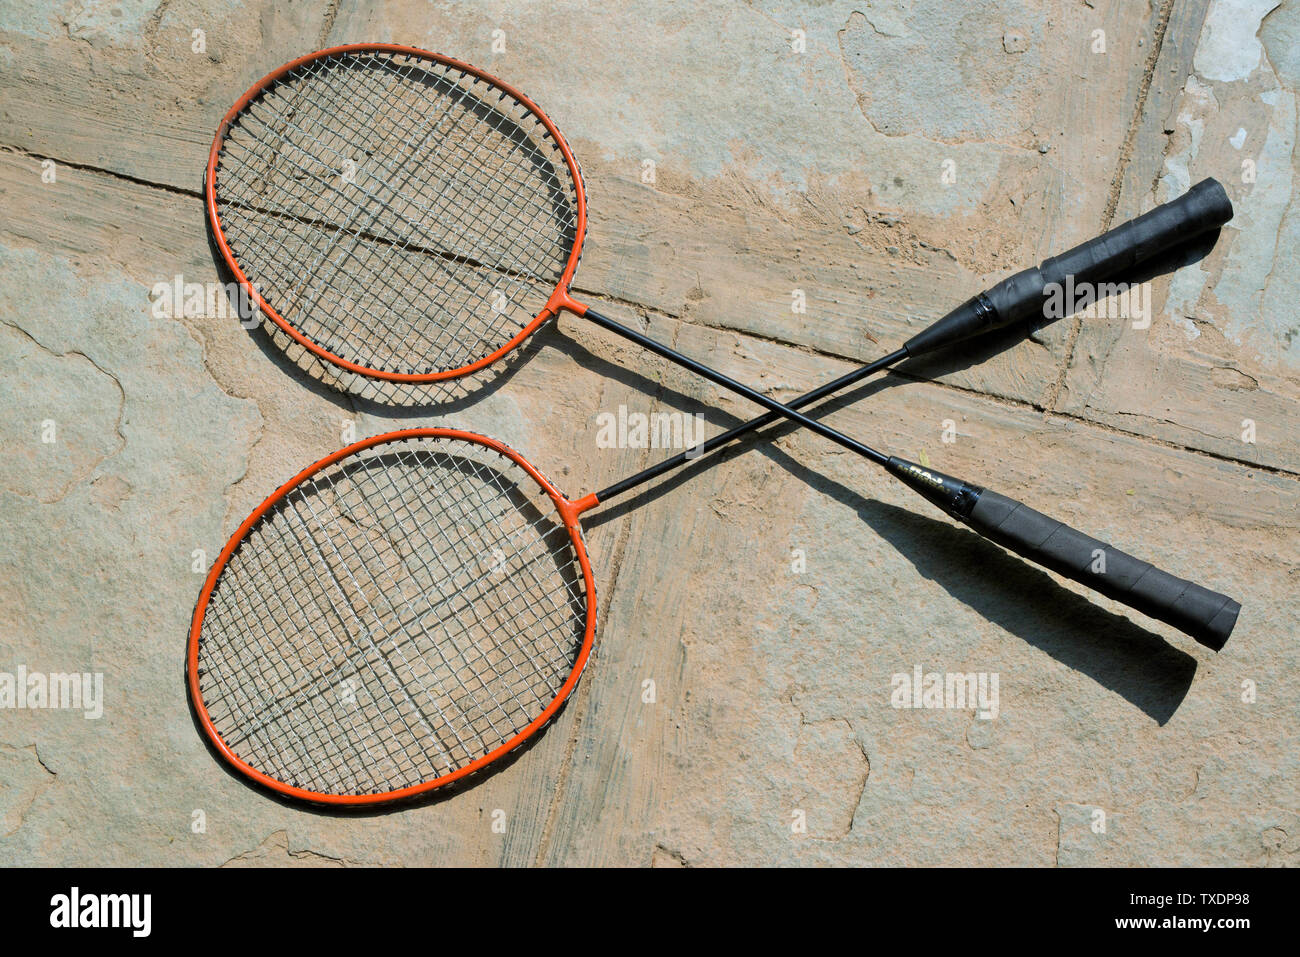 Raquettes de badminton sur le plancher à l'Agroalimentaire, Pune, Maharashtra, Inde, Asie Banque D'Images